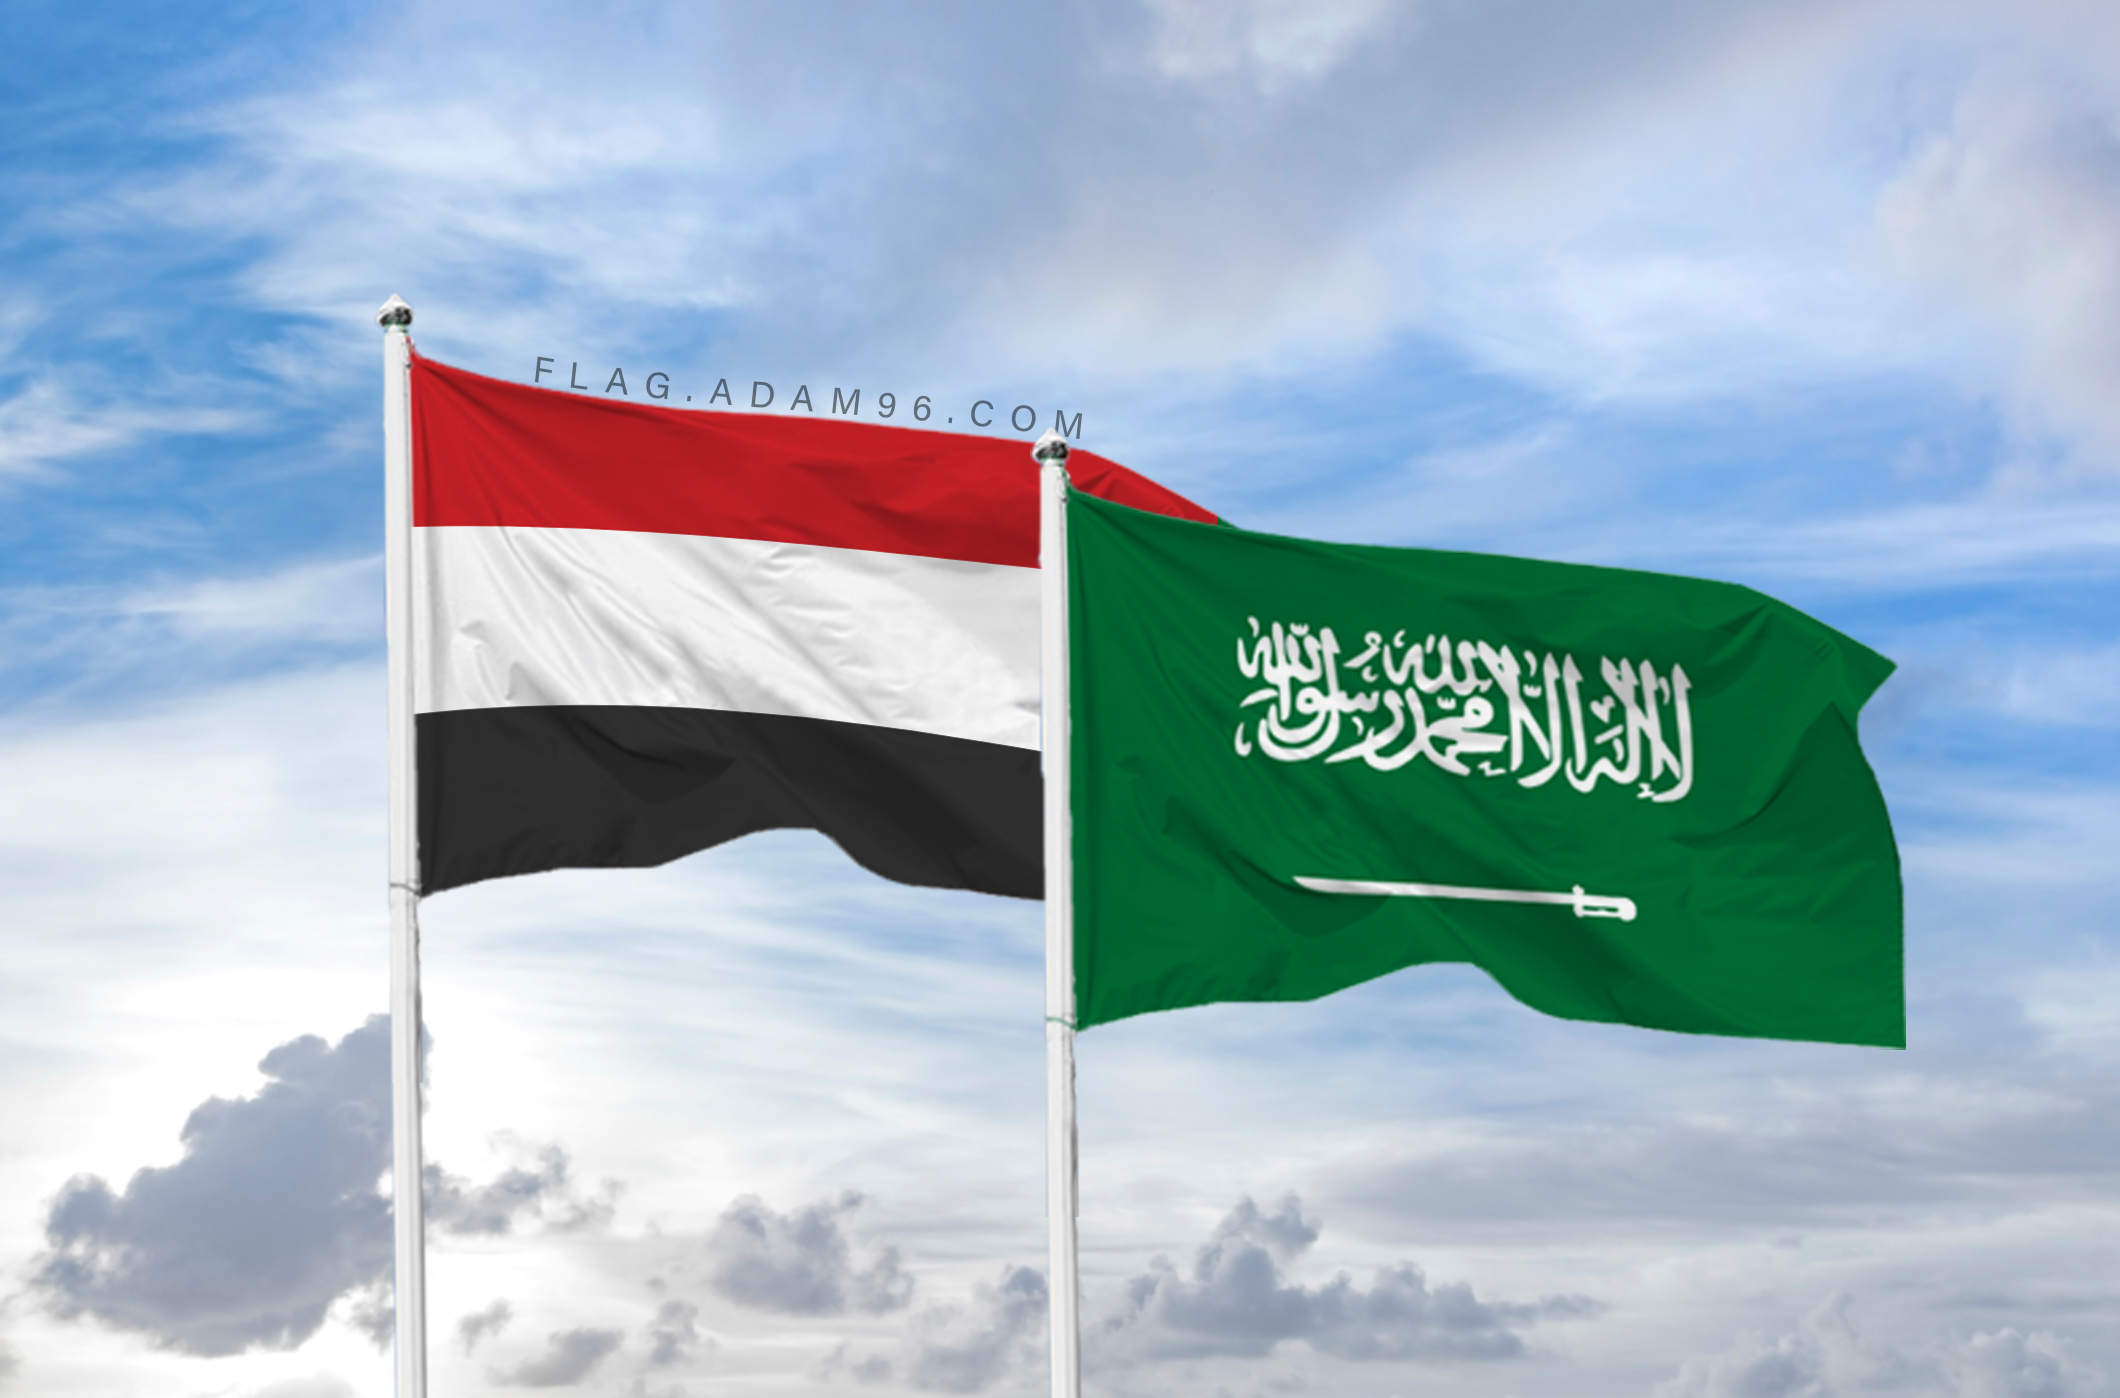 تحميل علم اليمن والسعودية خلفية اعلام العالم بدقة عالية Yemen and Saudi Arabia